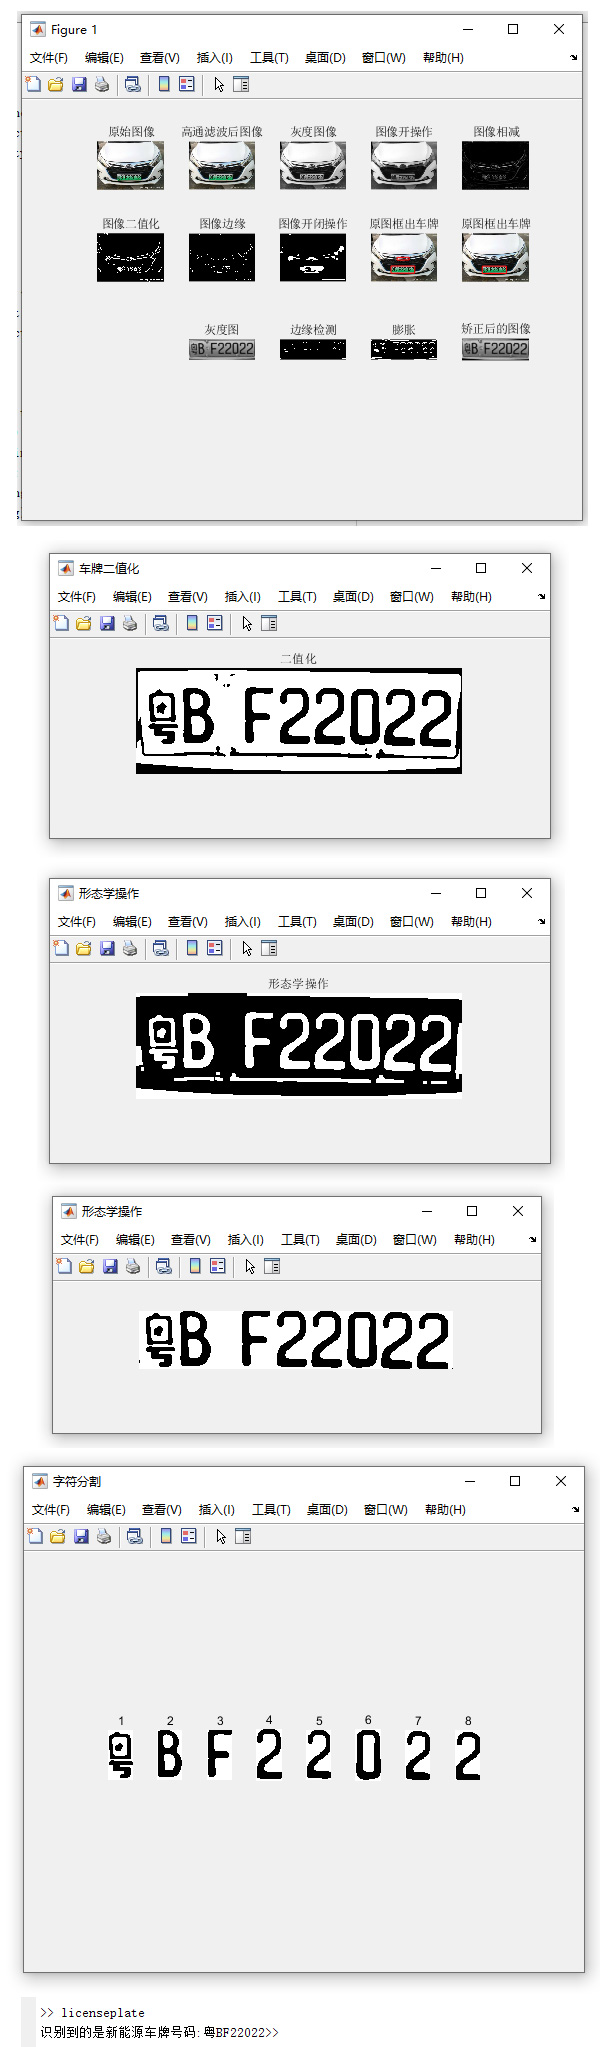 【B186】Matlab实现车牌识别(蓝色车牌和新能源车牌)